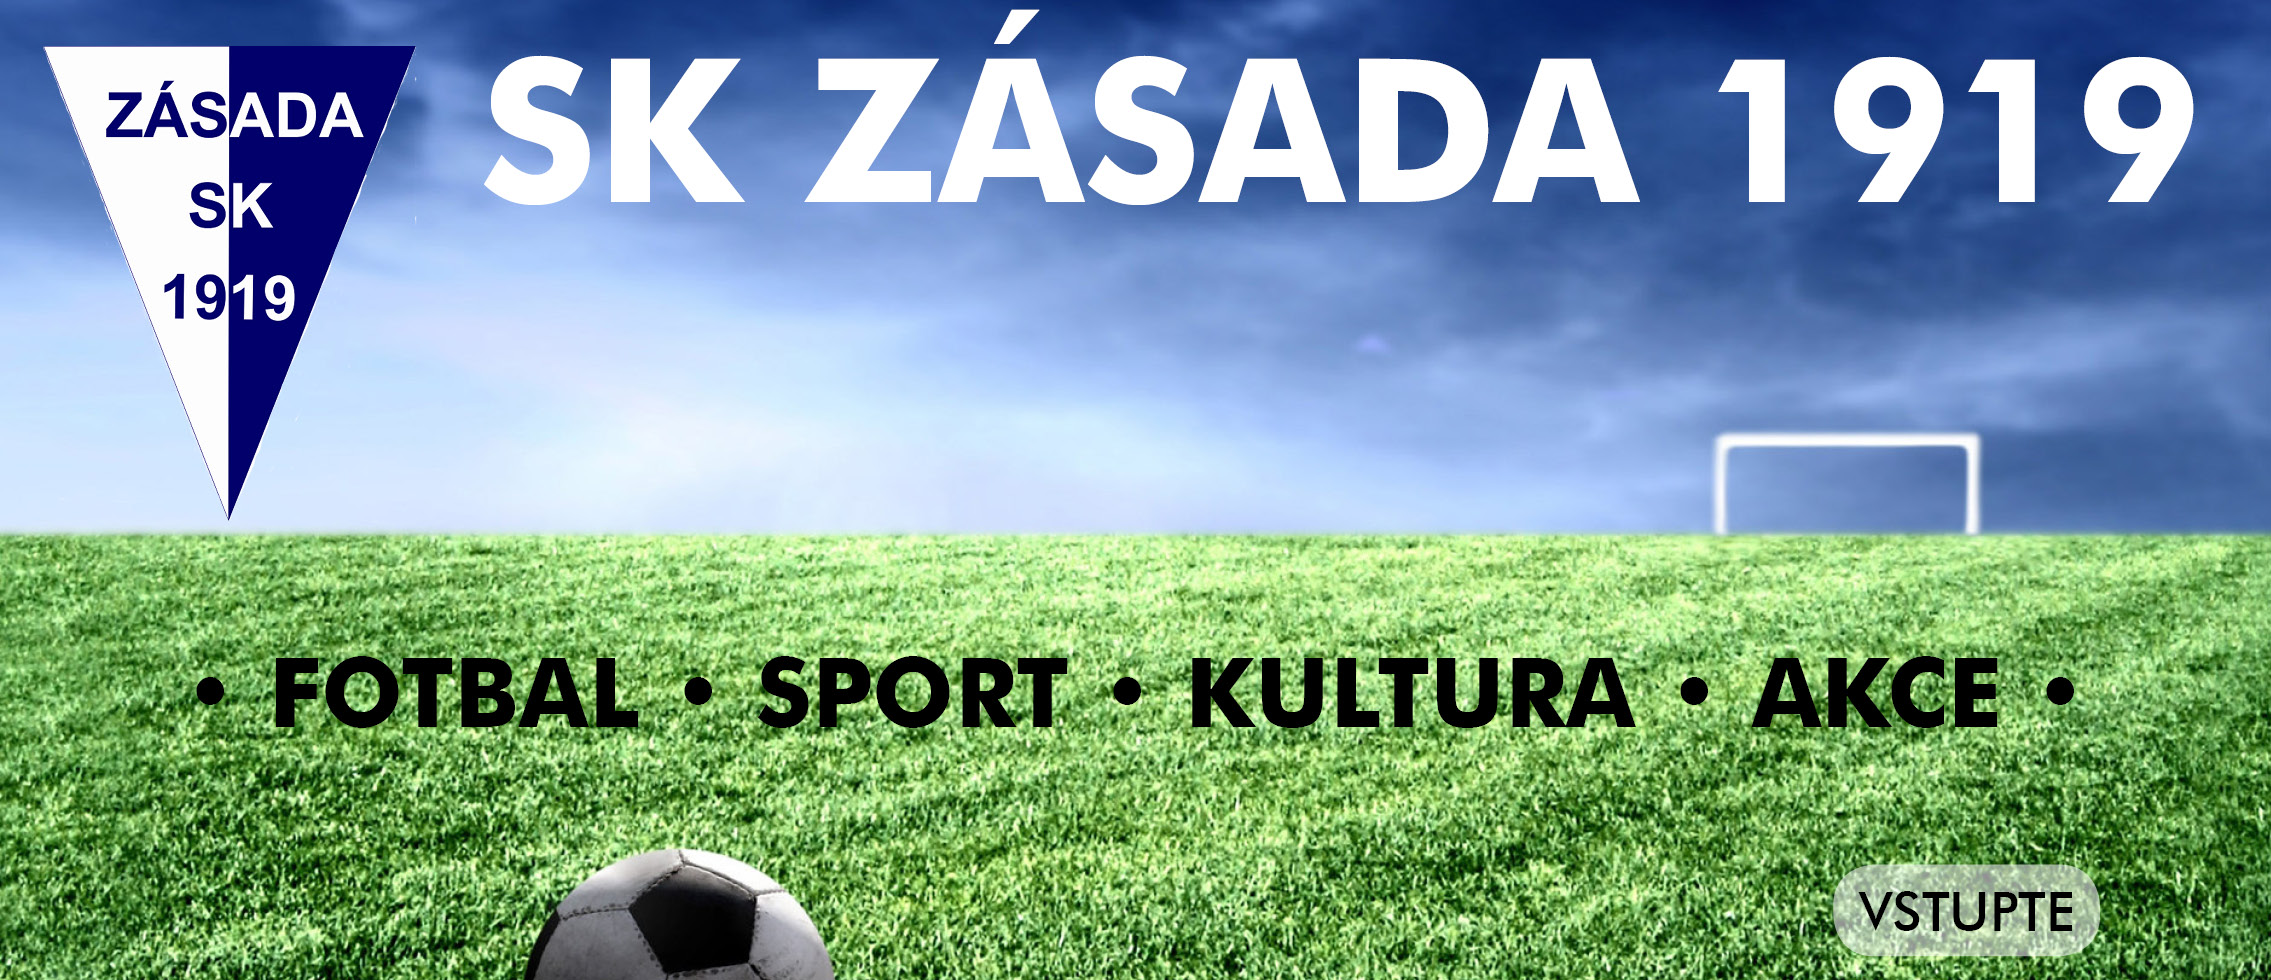 Fotbalov klub Zsada